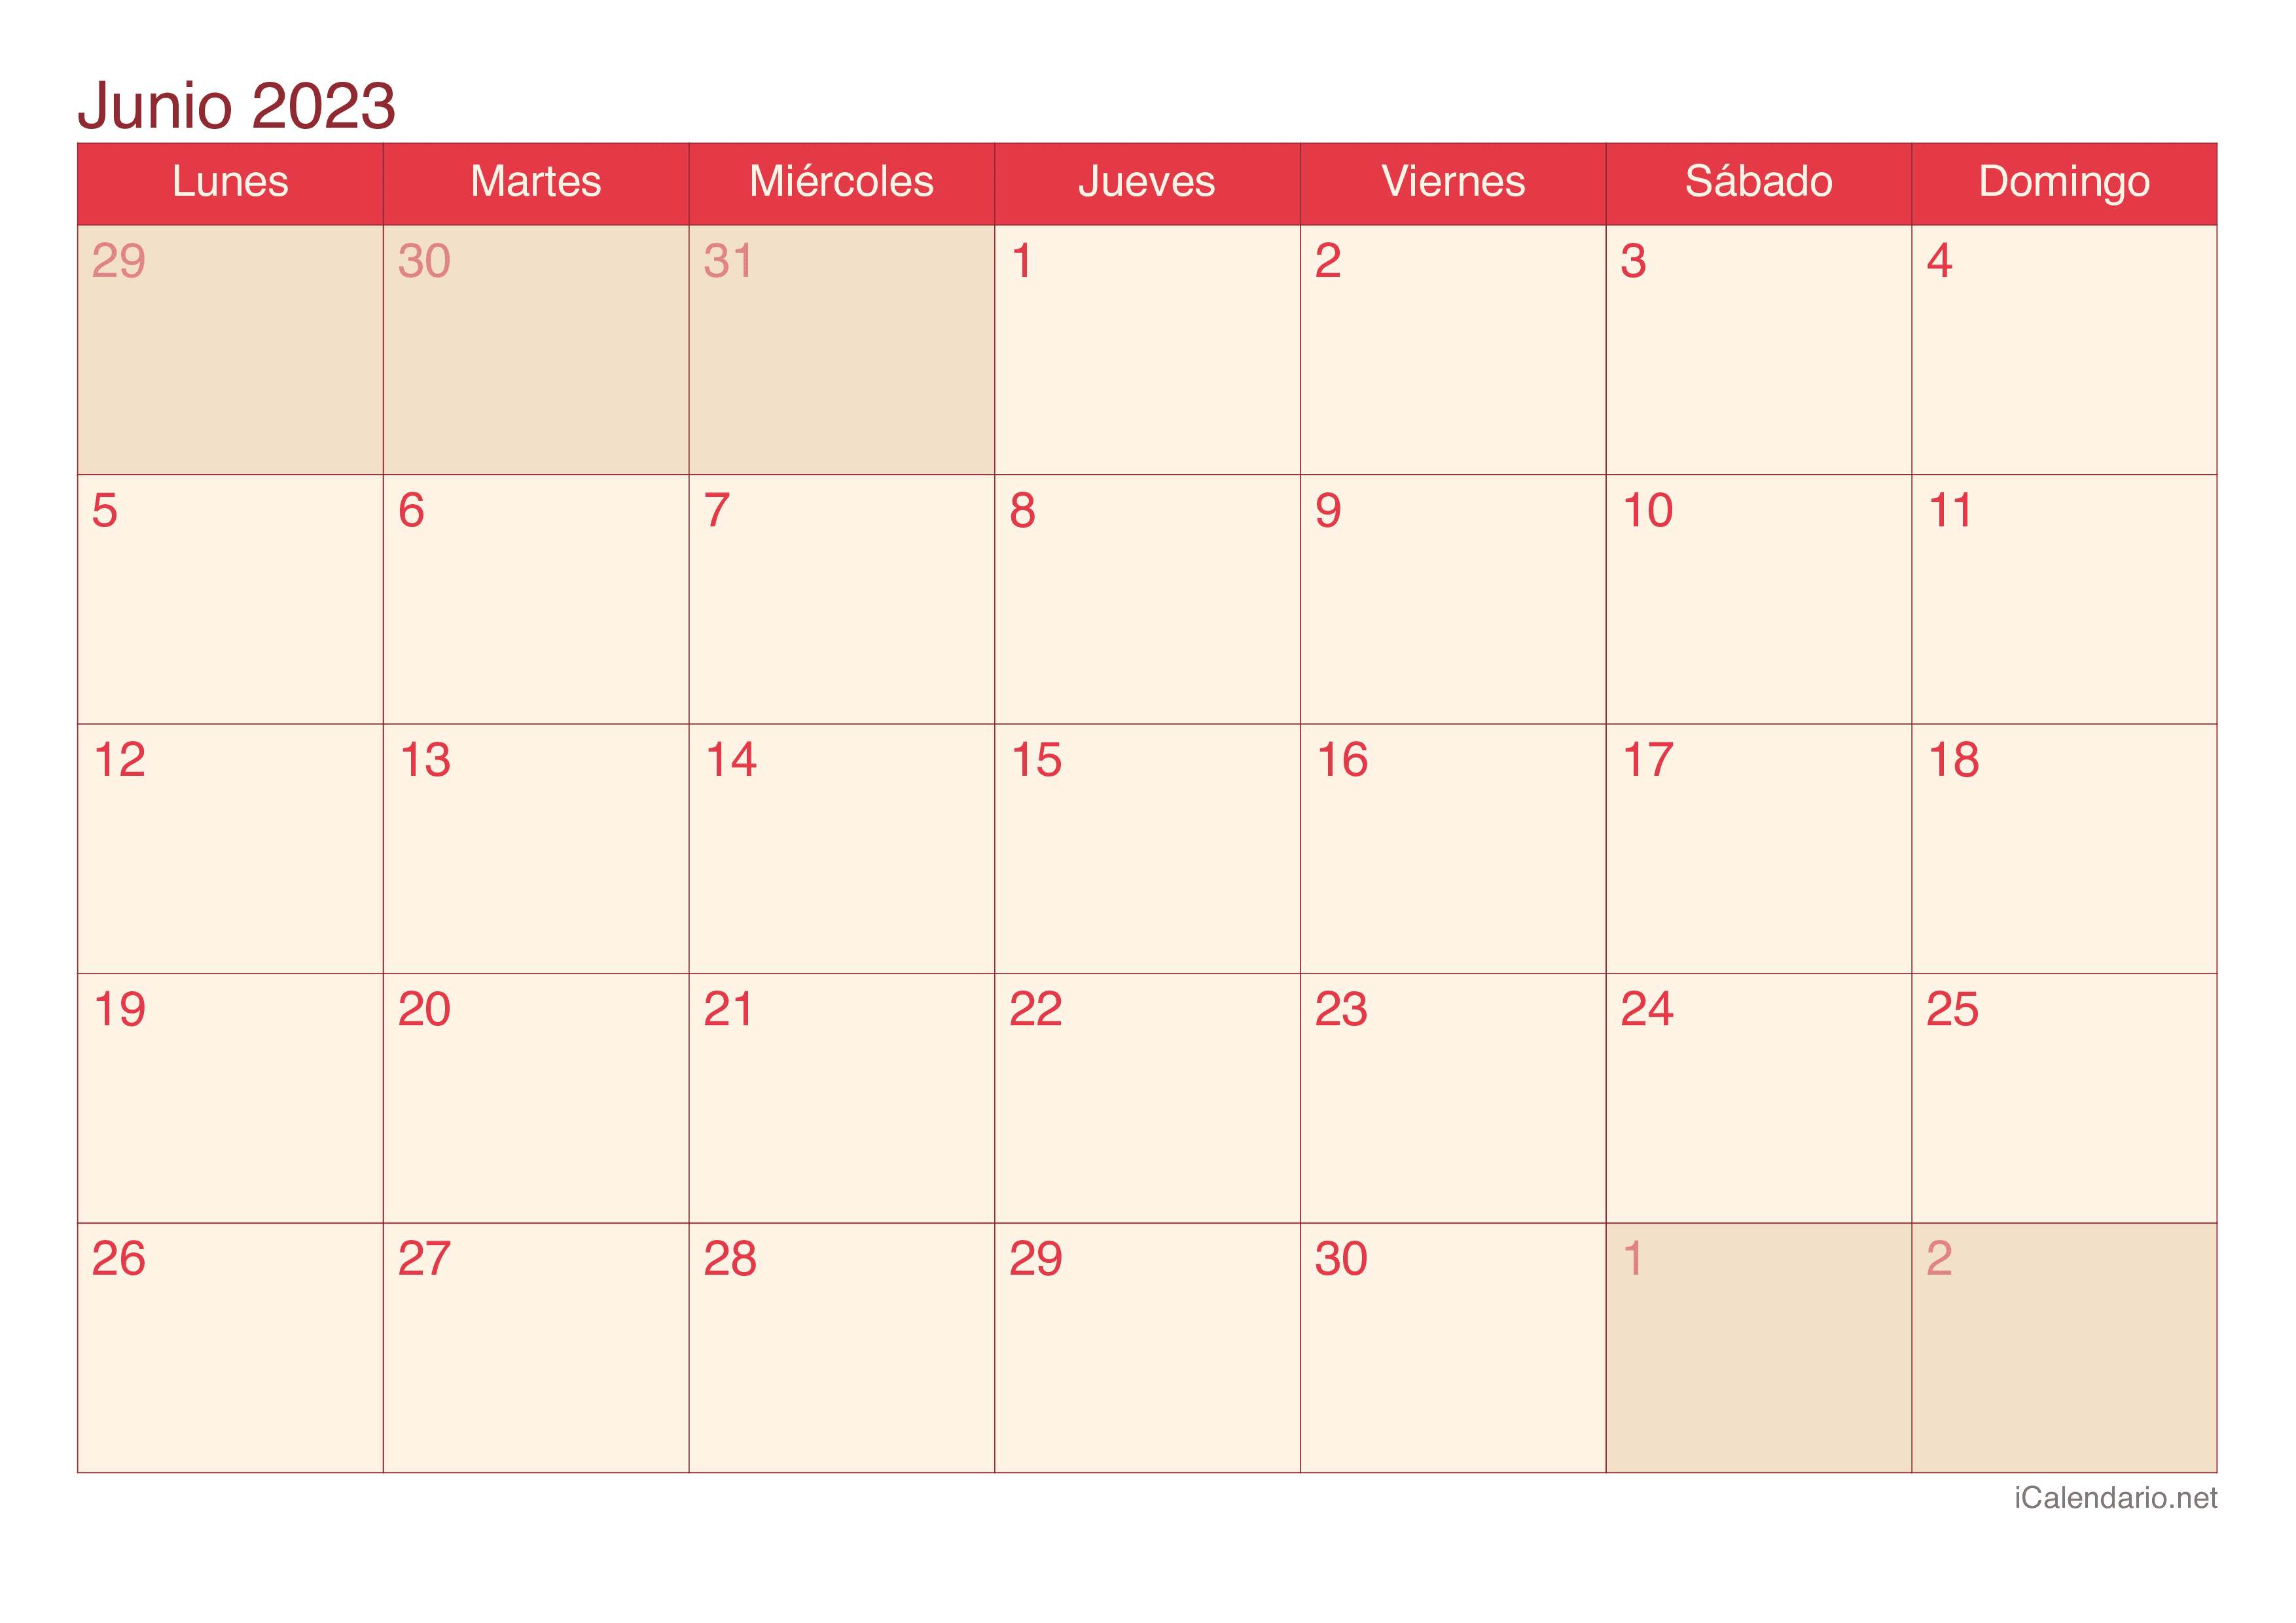 Calendario de junio 2023 - Cherry